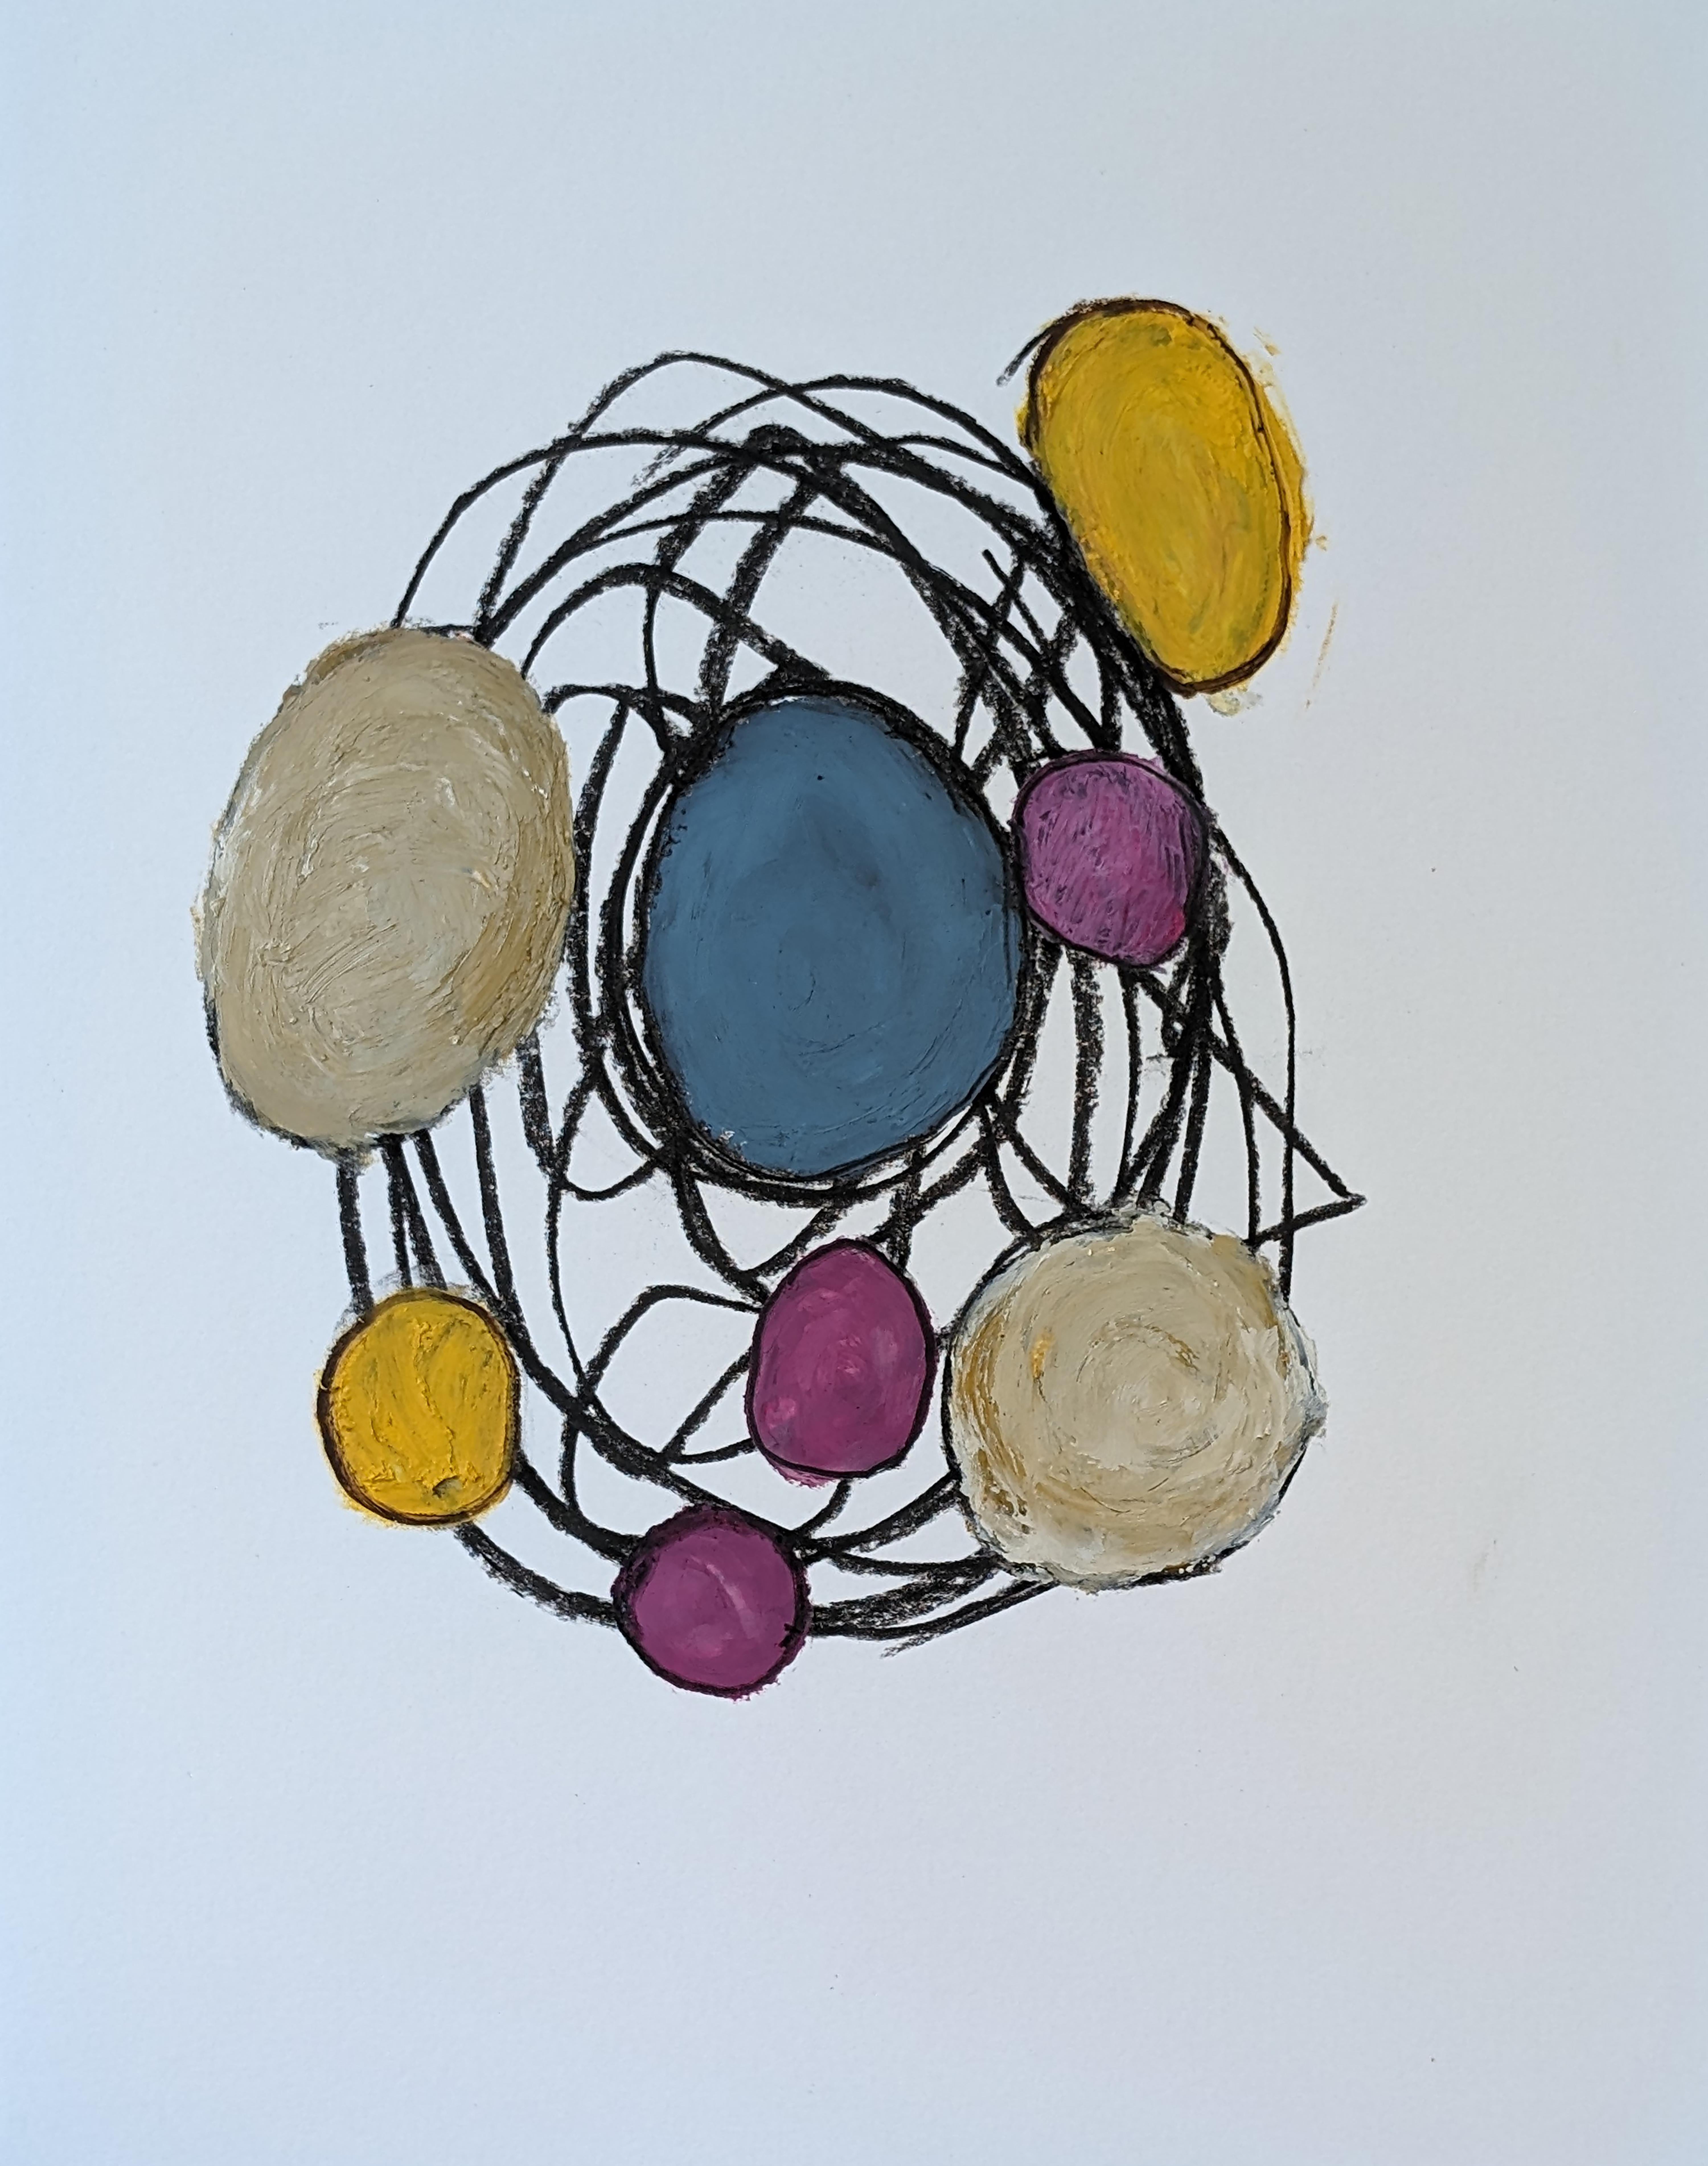 Abstract Drawing Vincent Salvati - "Structures D04" Dessin abstrait contemporain à l'huile sur papier